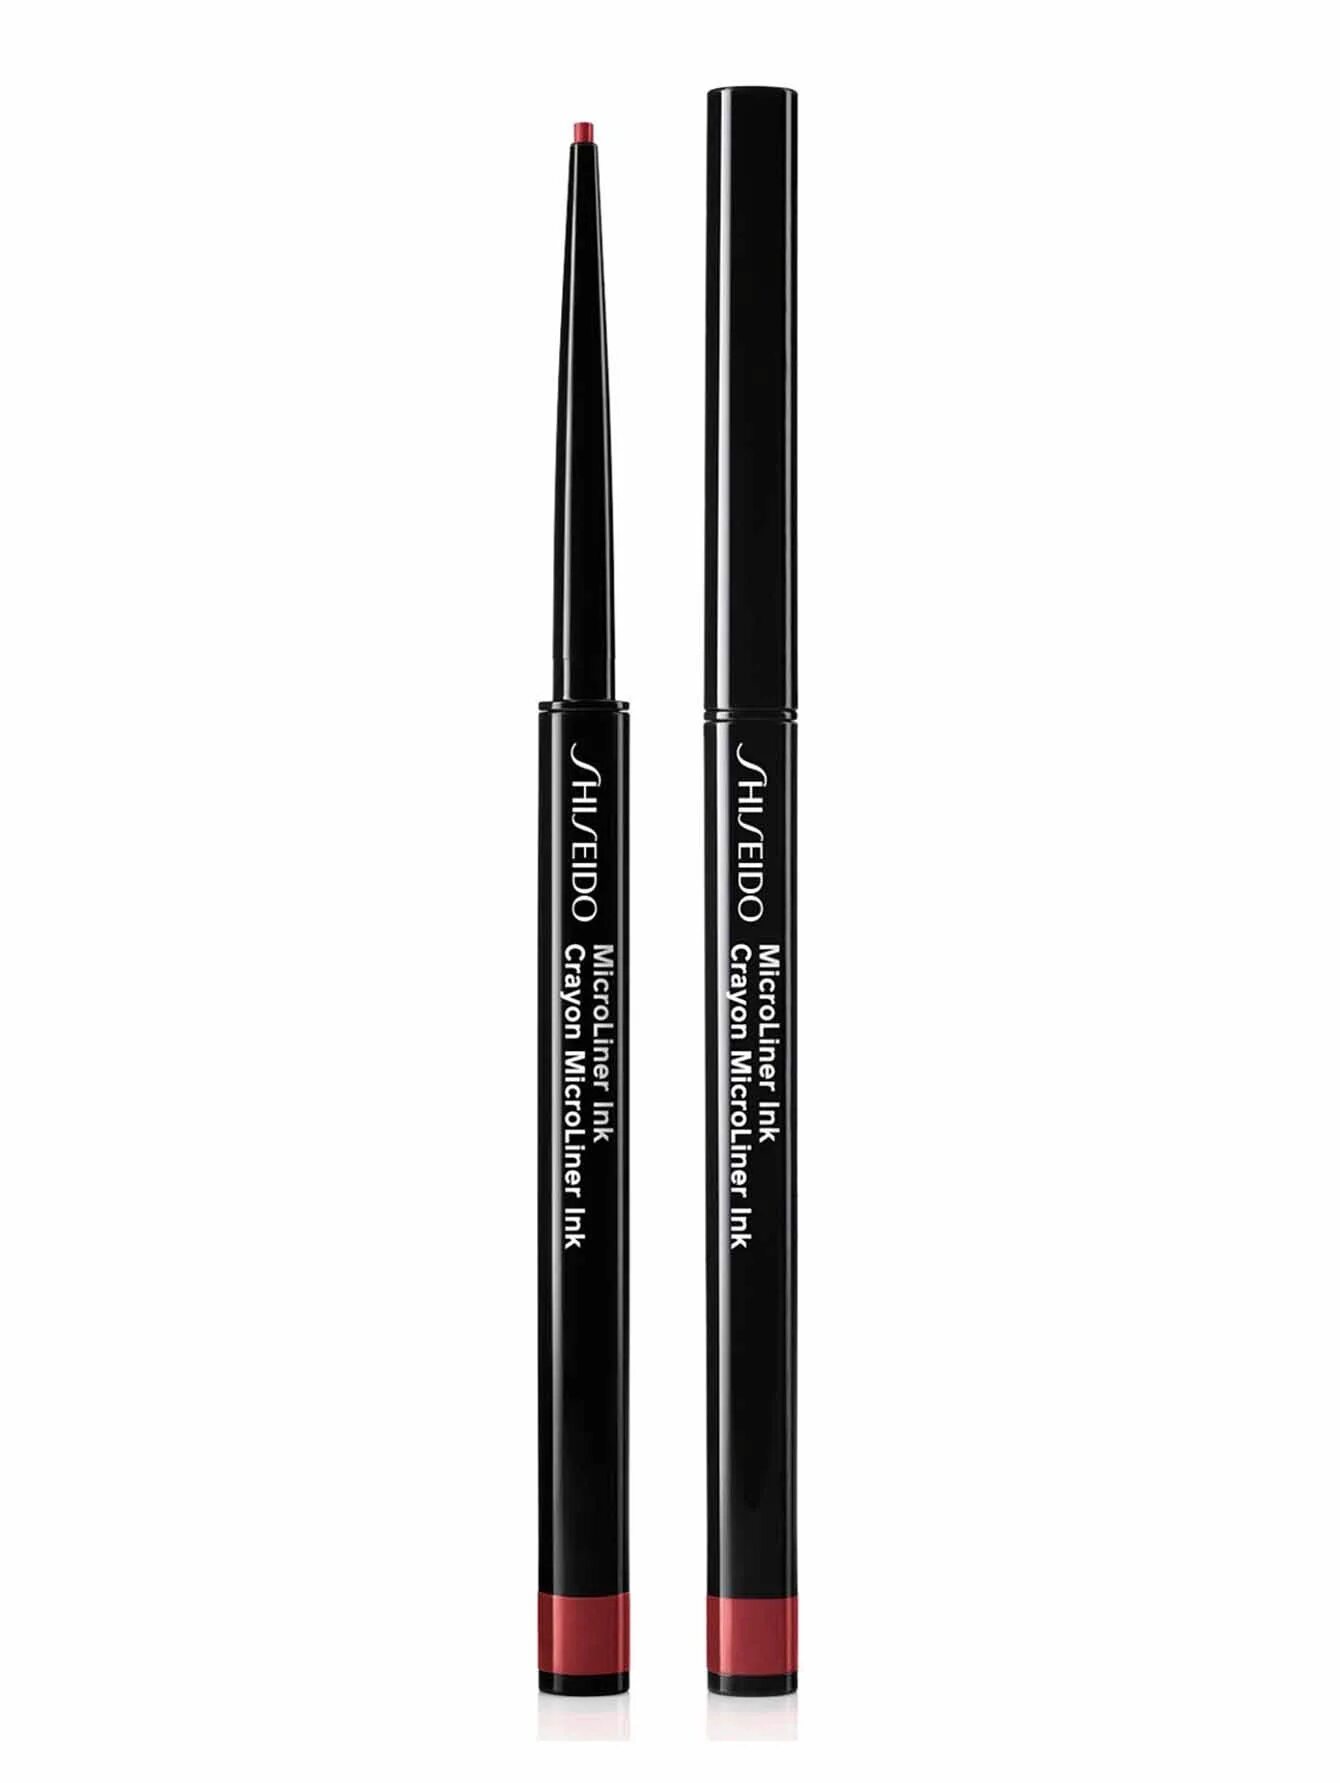 Shiseido Microliner Ink. Карандаш для глаз Shiseido Microliner. Shiseido Microliner Ink 03 Plum. Missha Longwear Gel Pencil Liner. Stellary eyeliner